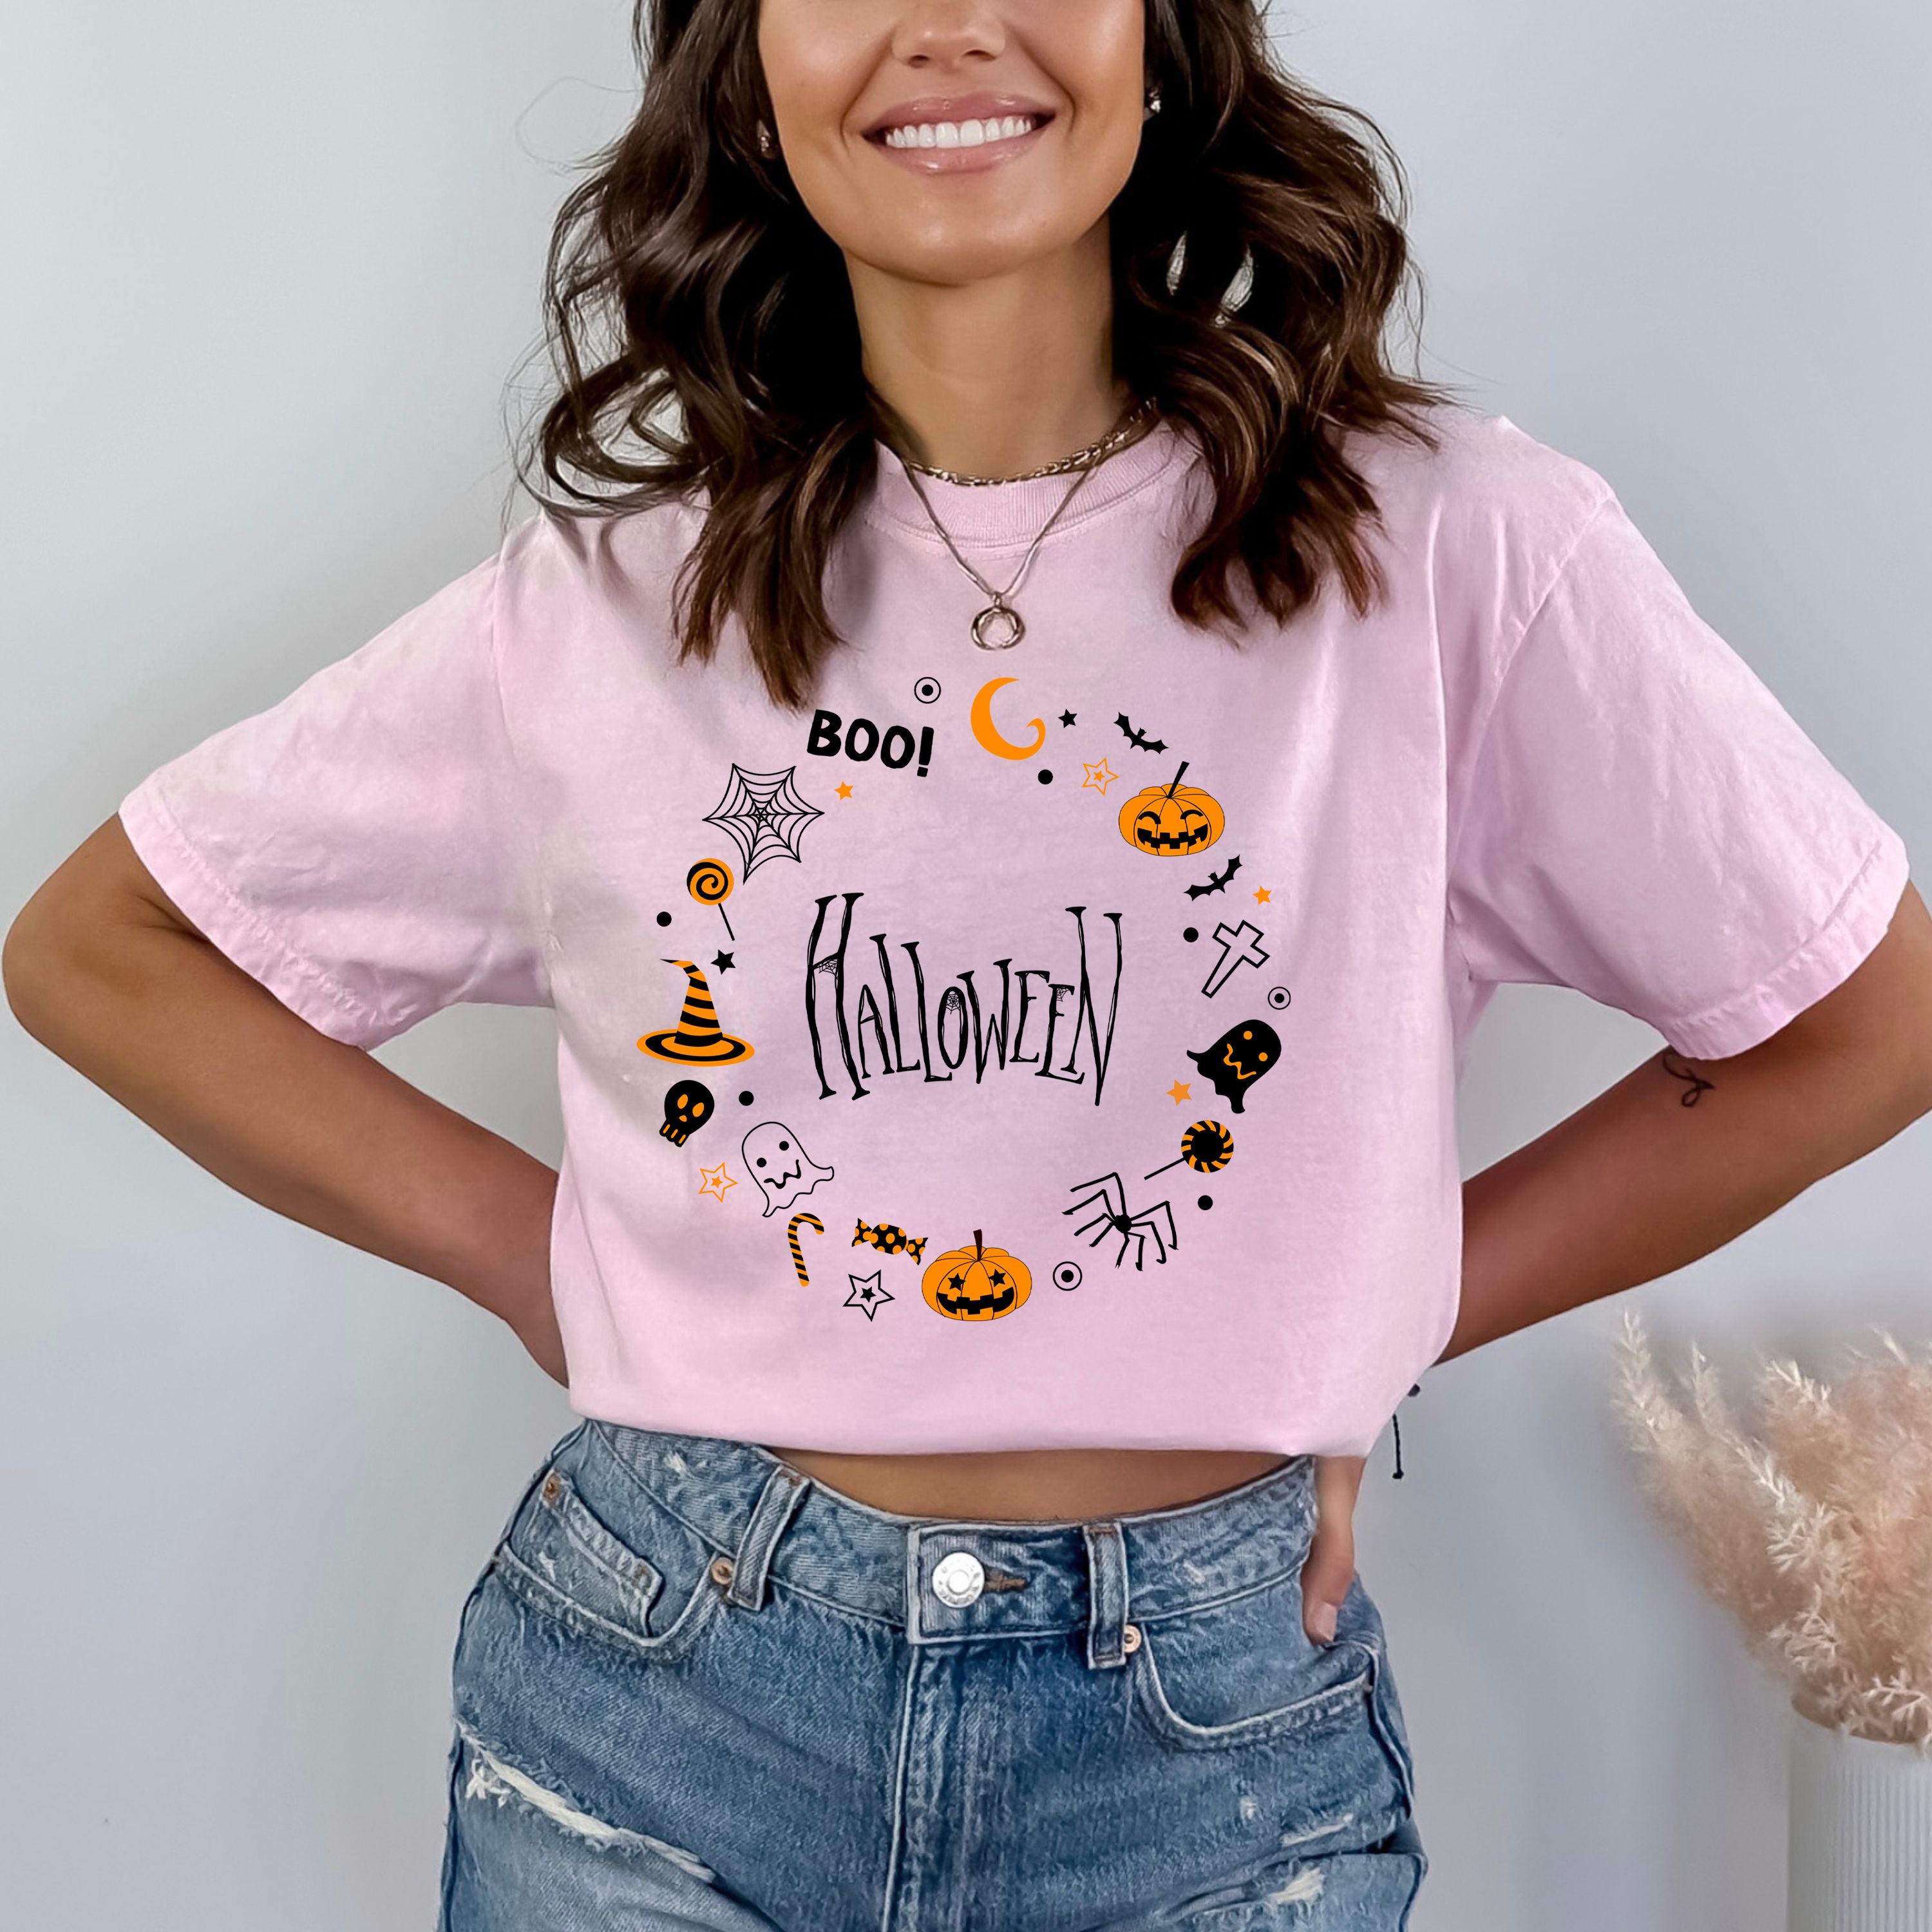 Halloween Shirt - Bella Canvas